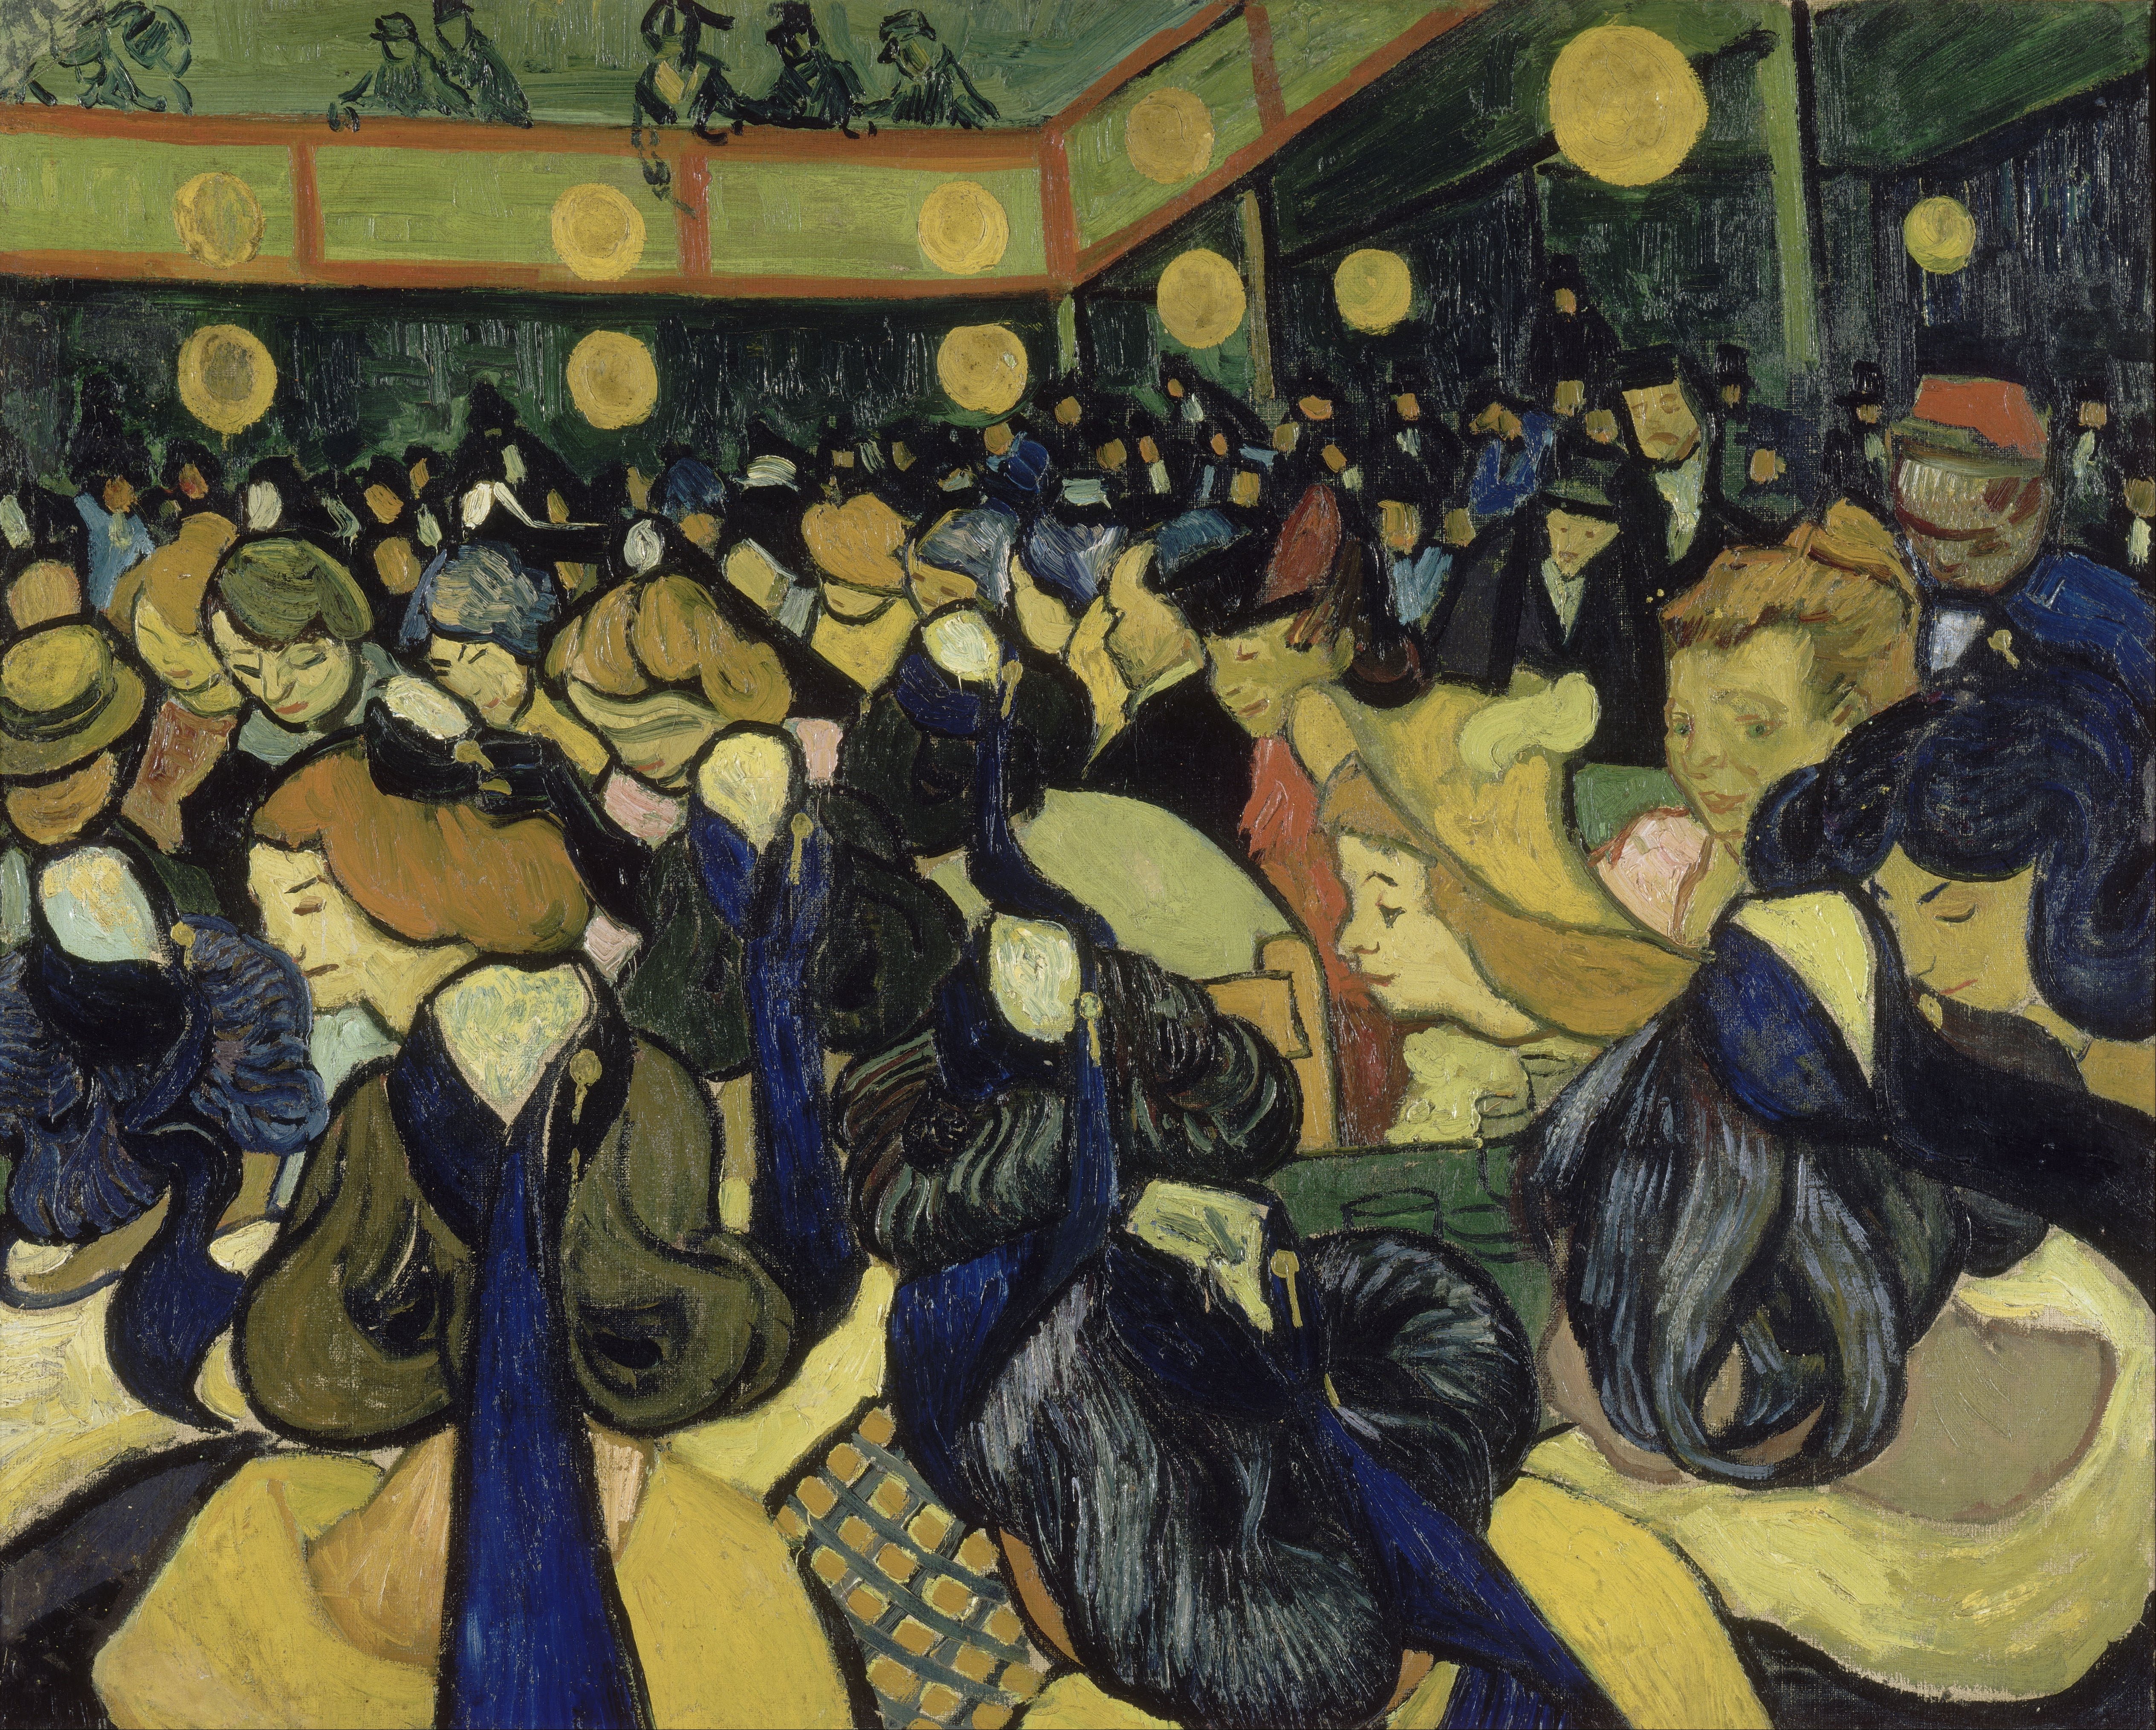 亞爾的舞廳 by Vincent van Gogh - 西元1888 - 65 x 81 公分 